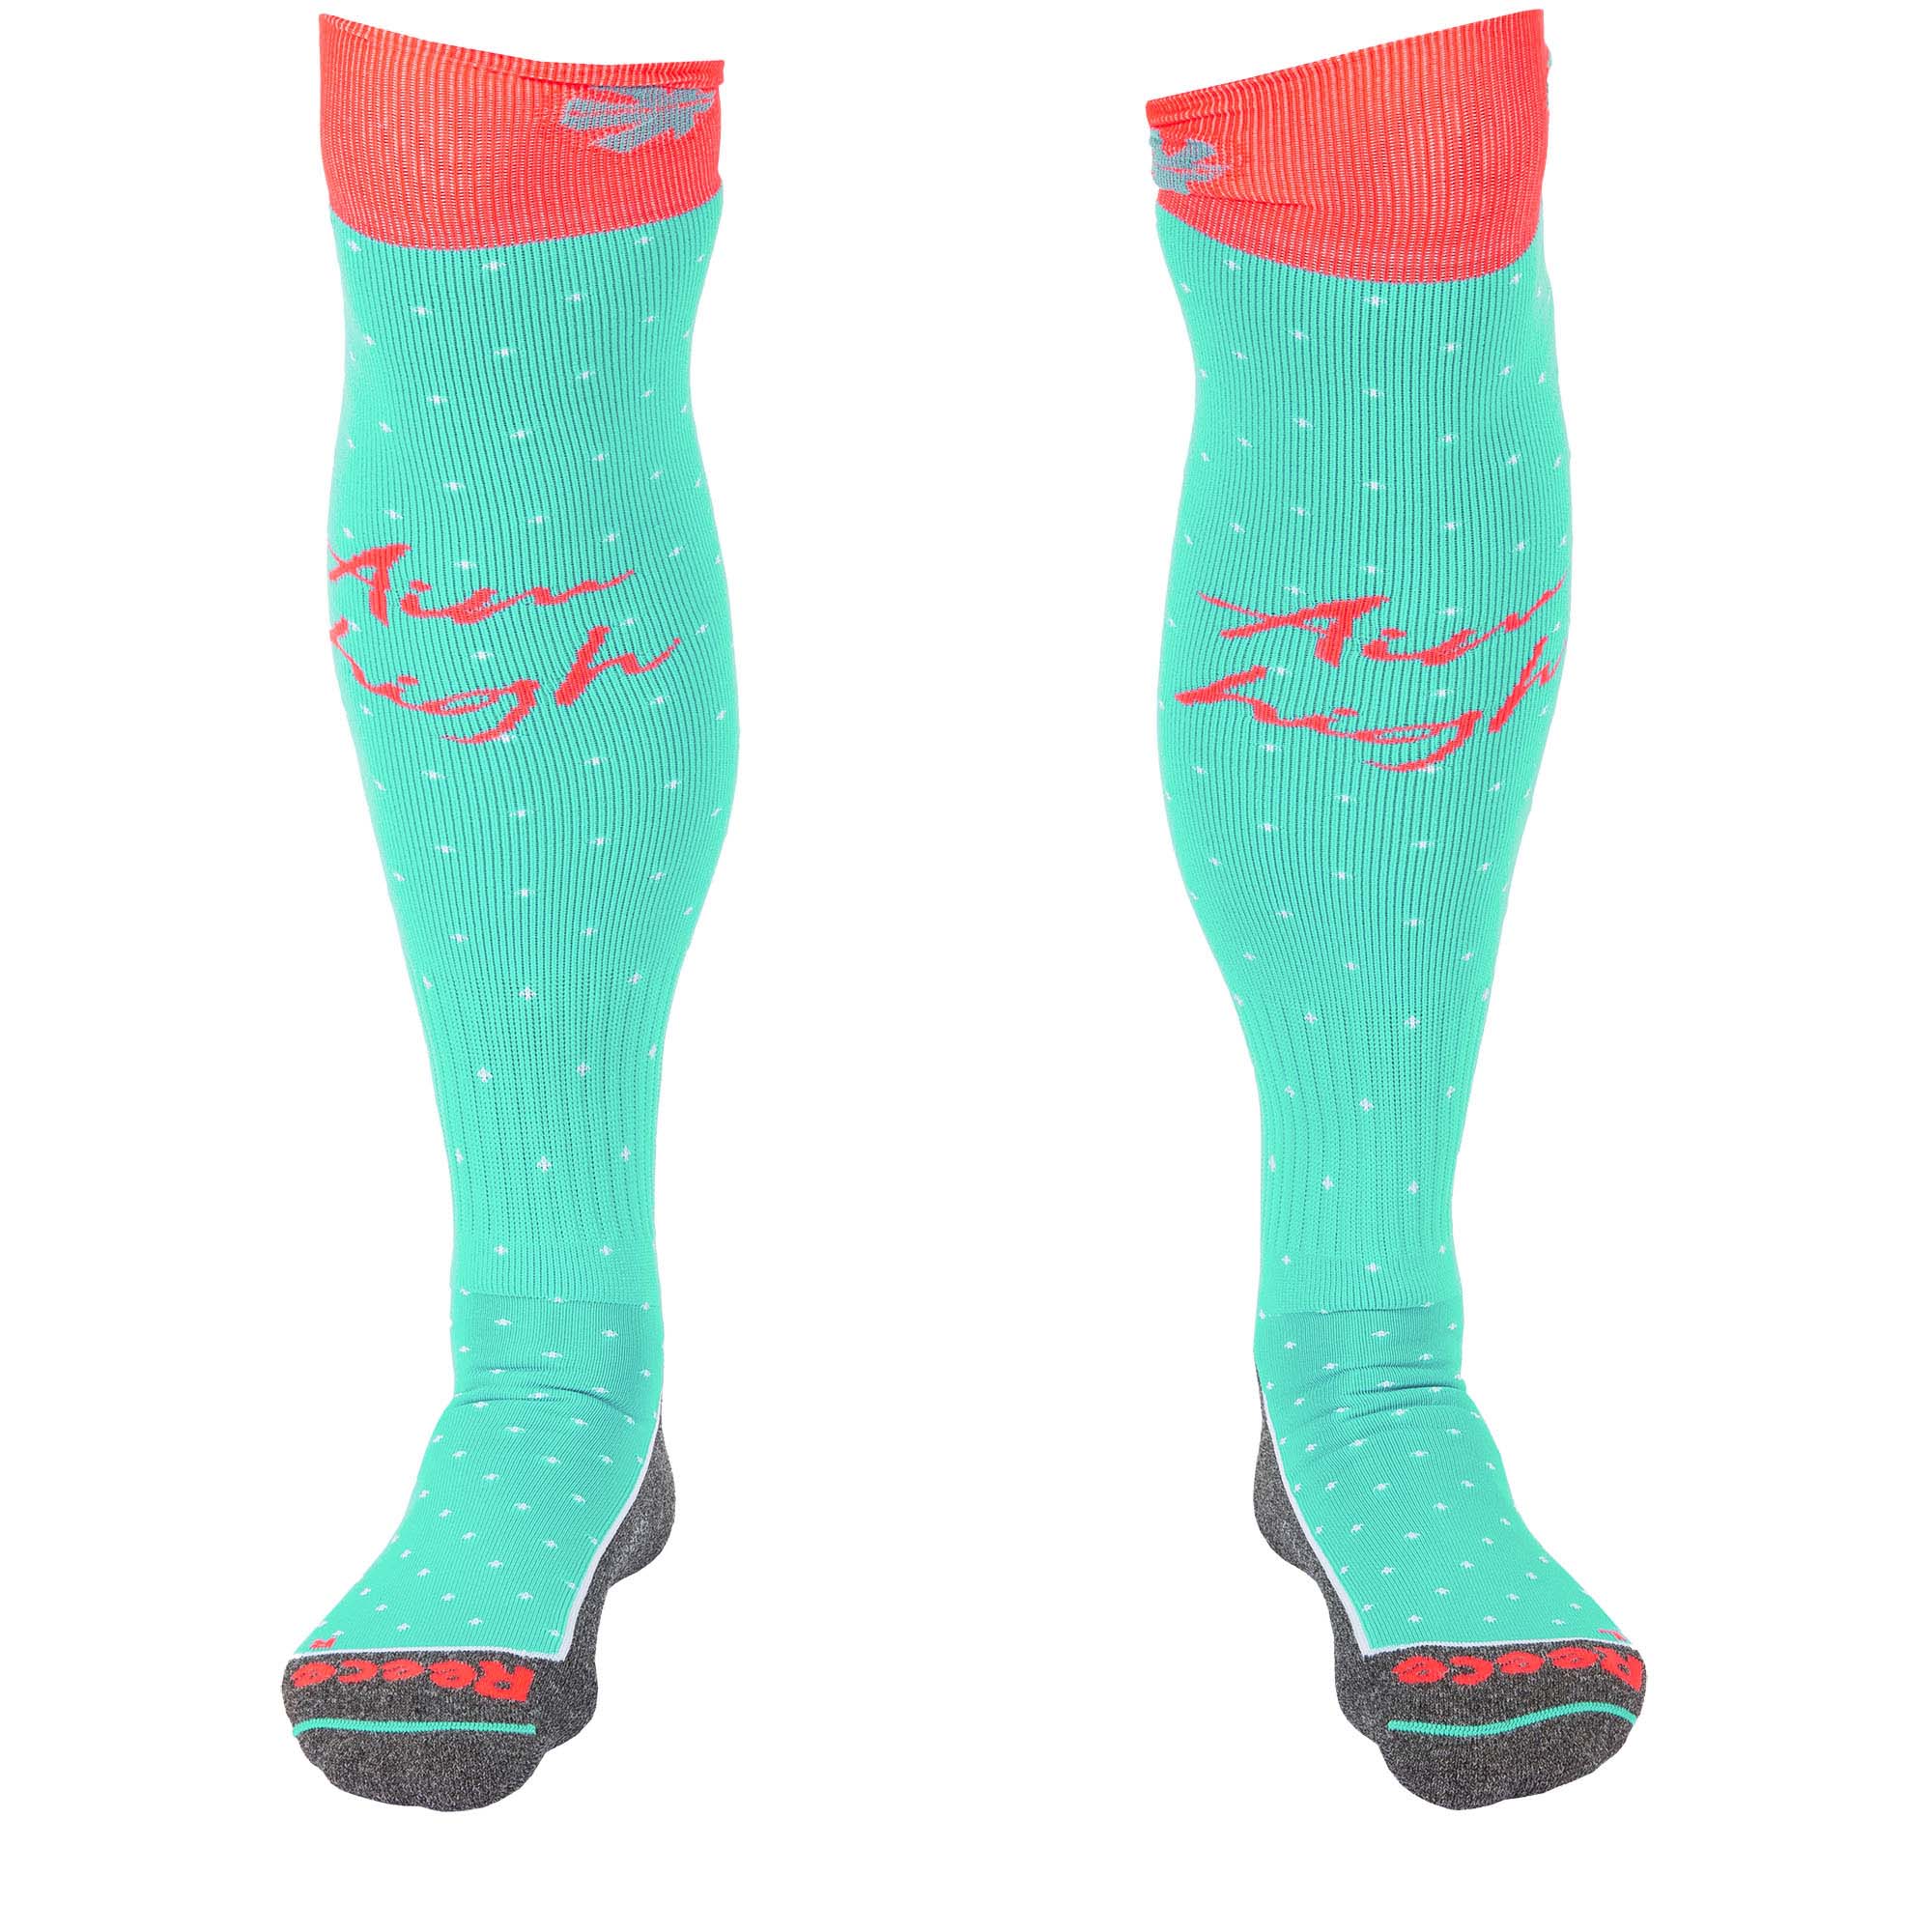 amaroo socks